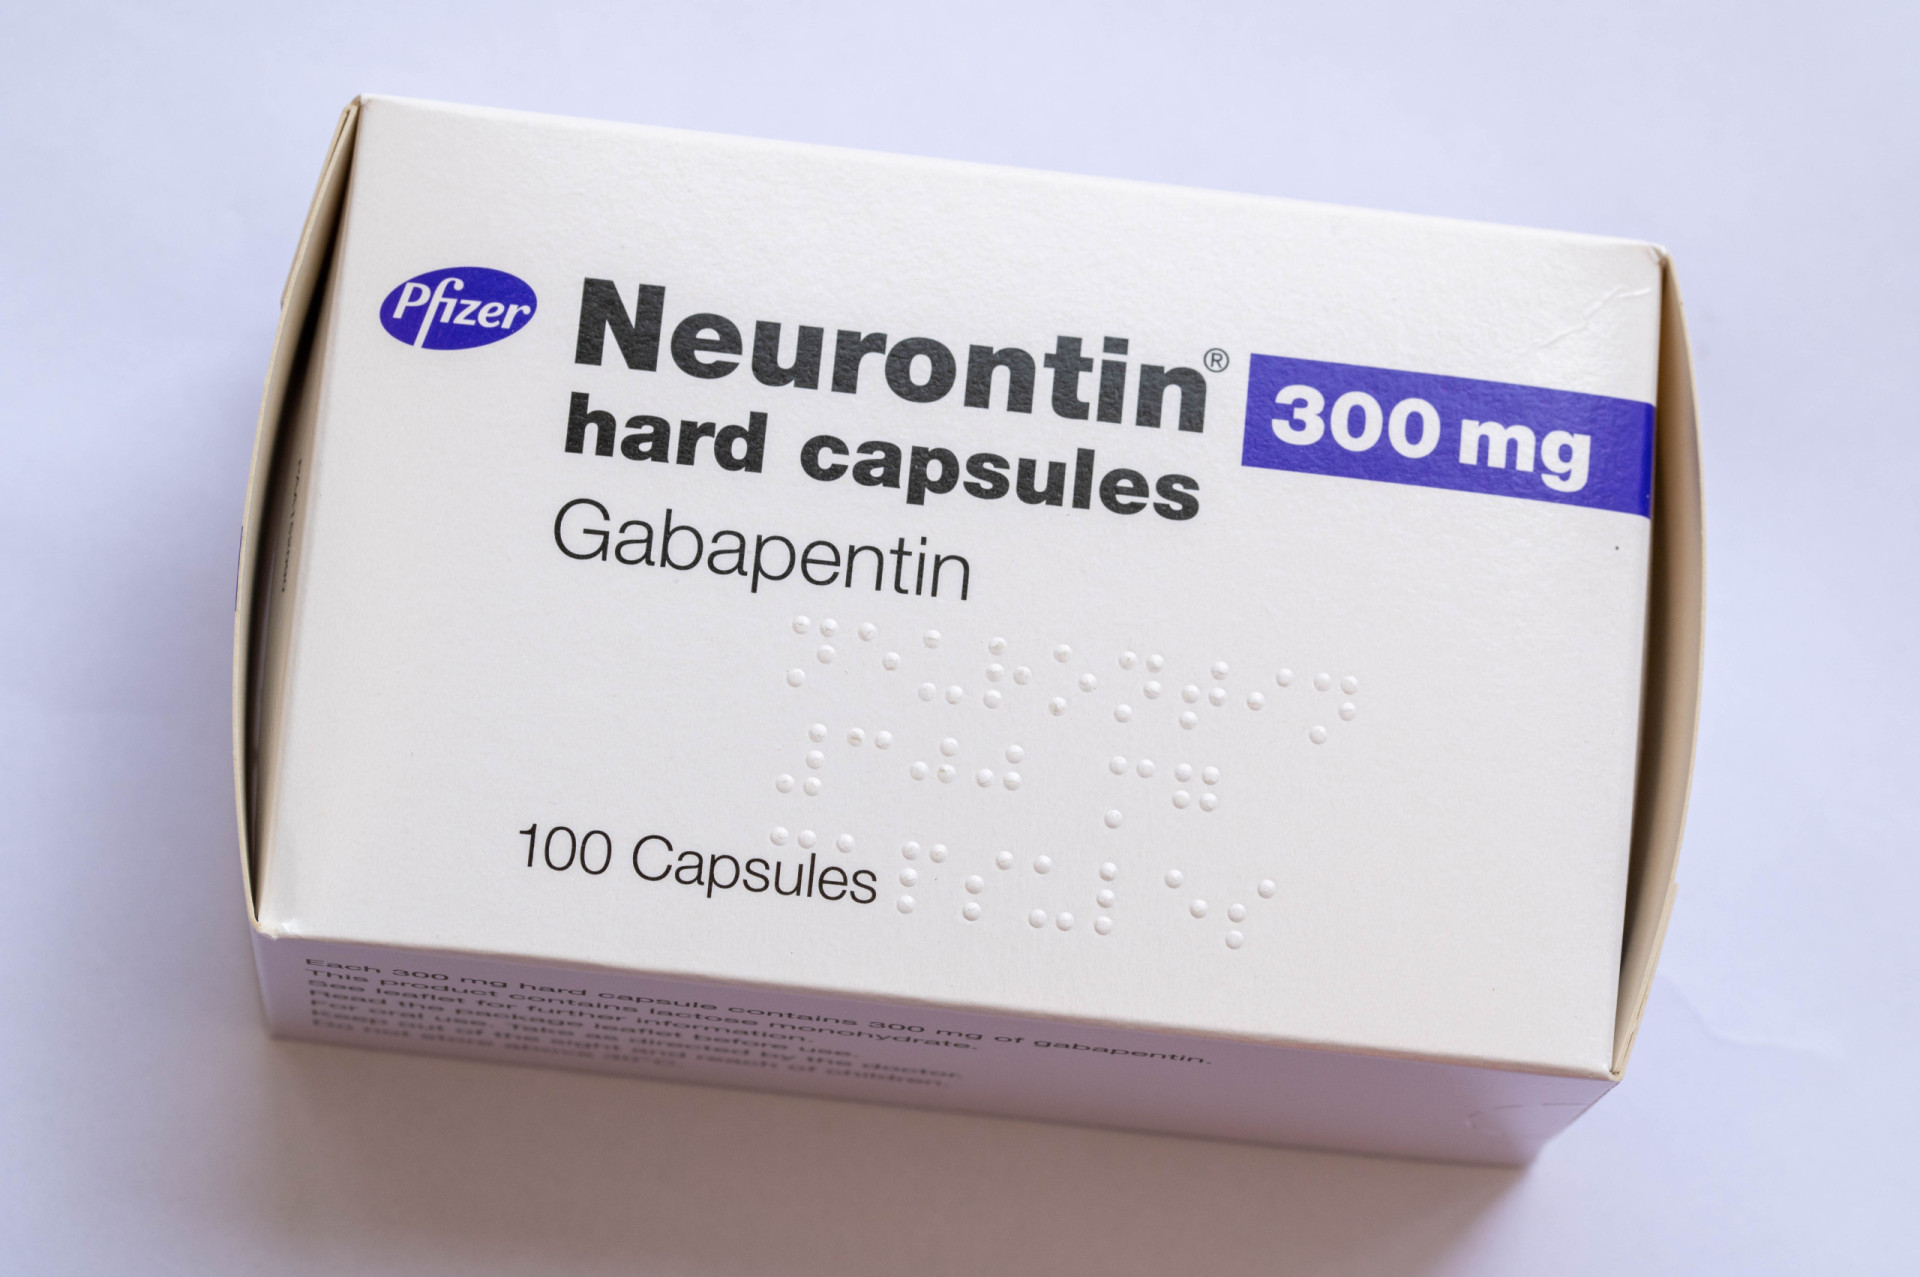 Габапентин 300 мг купить. Neurontin 300mg. Нейронтин 300 мг. Габапентин Нейронтин 300мг. Нейронтин габапентин 300.